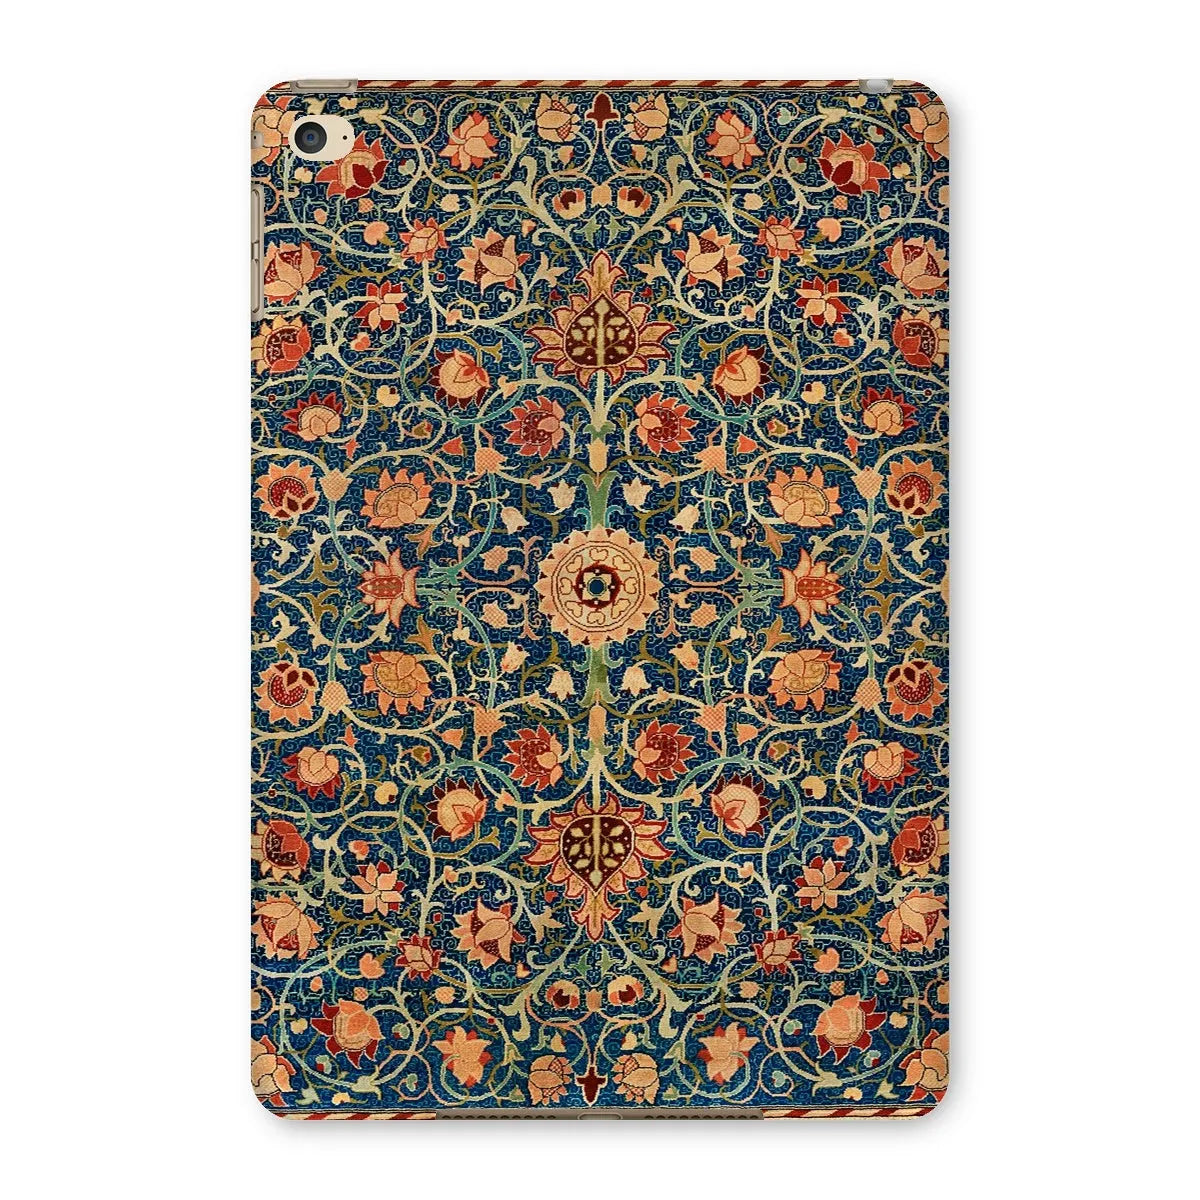 Holland Park Carpet By William Morris Aesthetic Ipad Case - Slim Designer Back